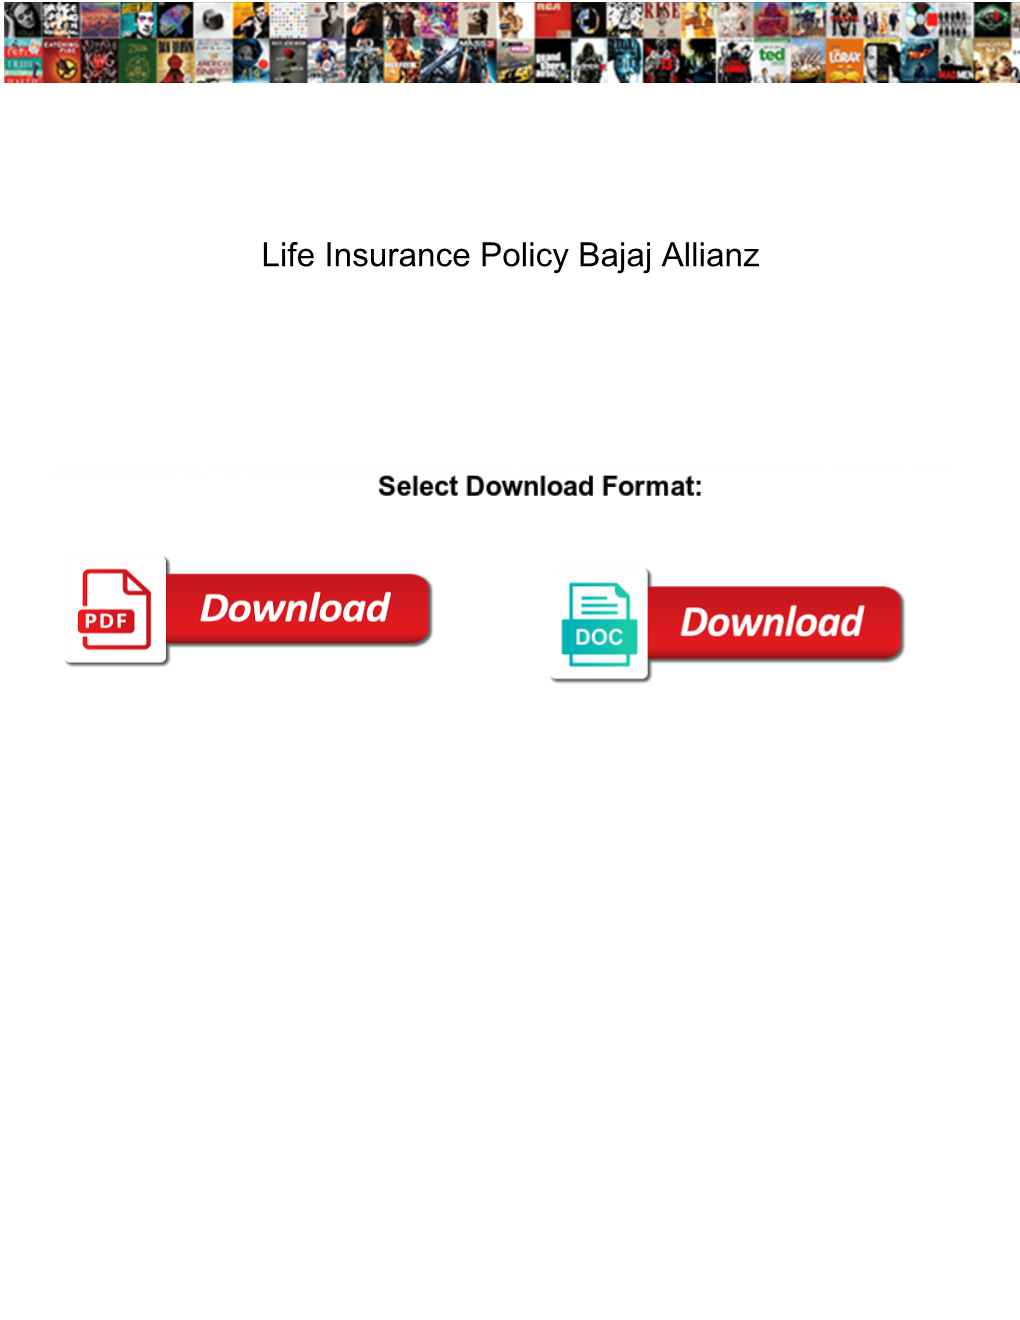 Life Insurance Policy Bajaj Allianz